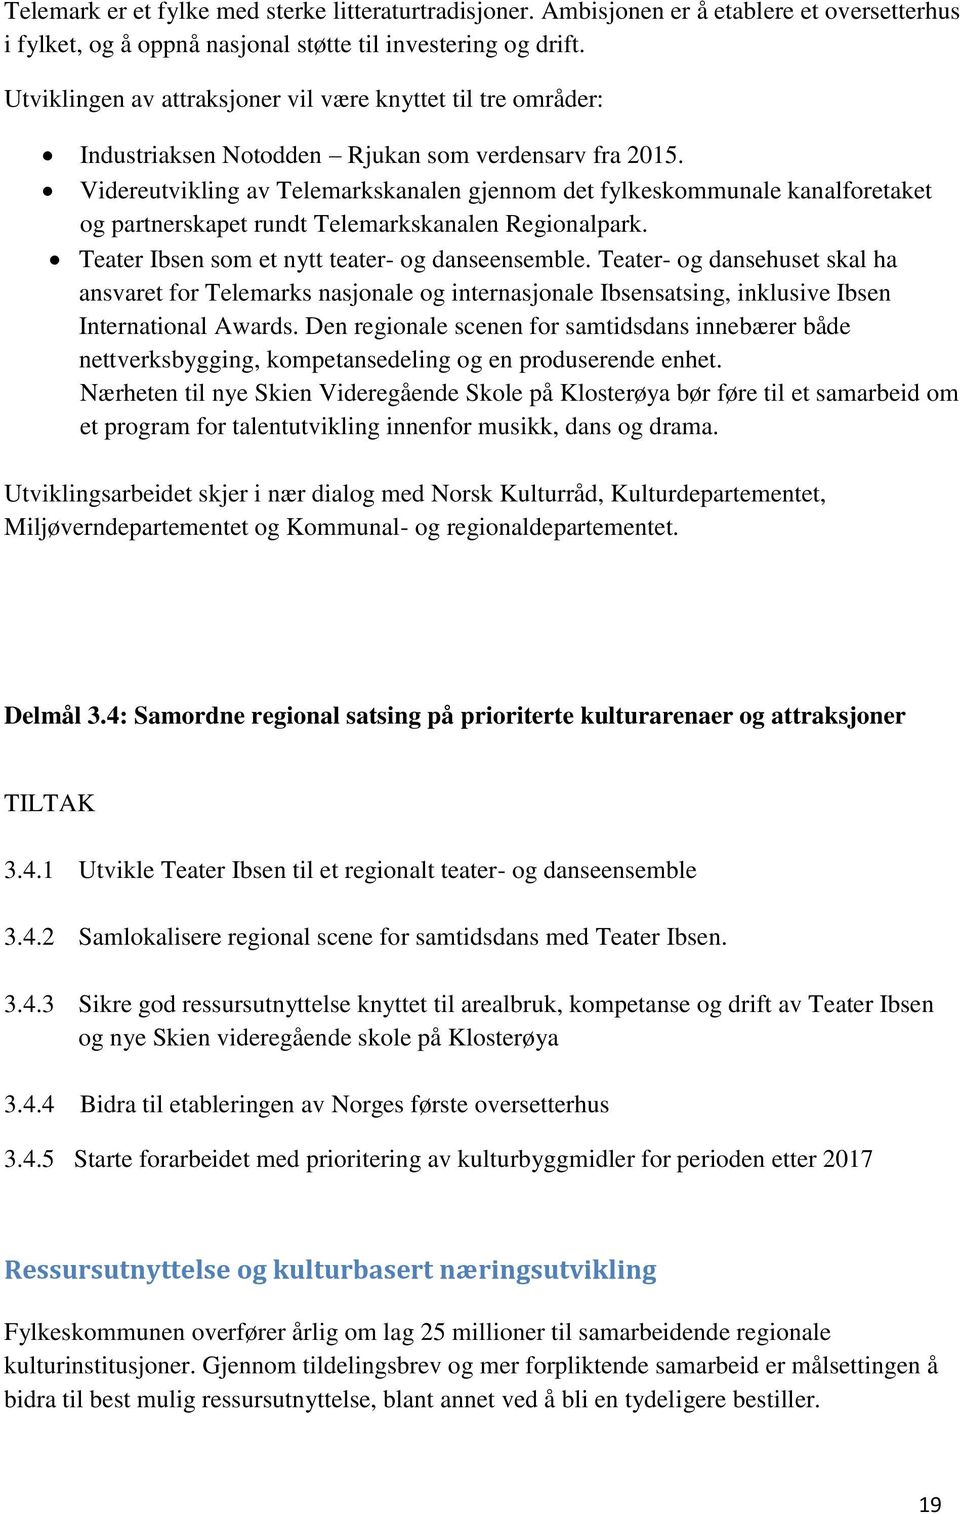 Videreutvikling av Telemarkskanalen gjennom det fylkeskommunale kanalforetaket og partnerskapet rundt Telemarkskanalen Regionalpark. Teater Ibsen som et nytt teater- og danseensemble.